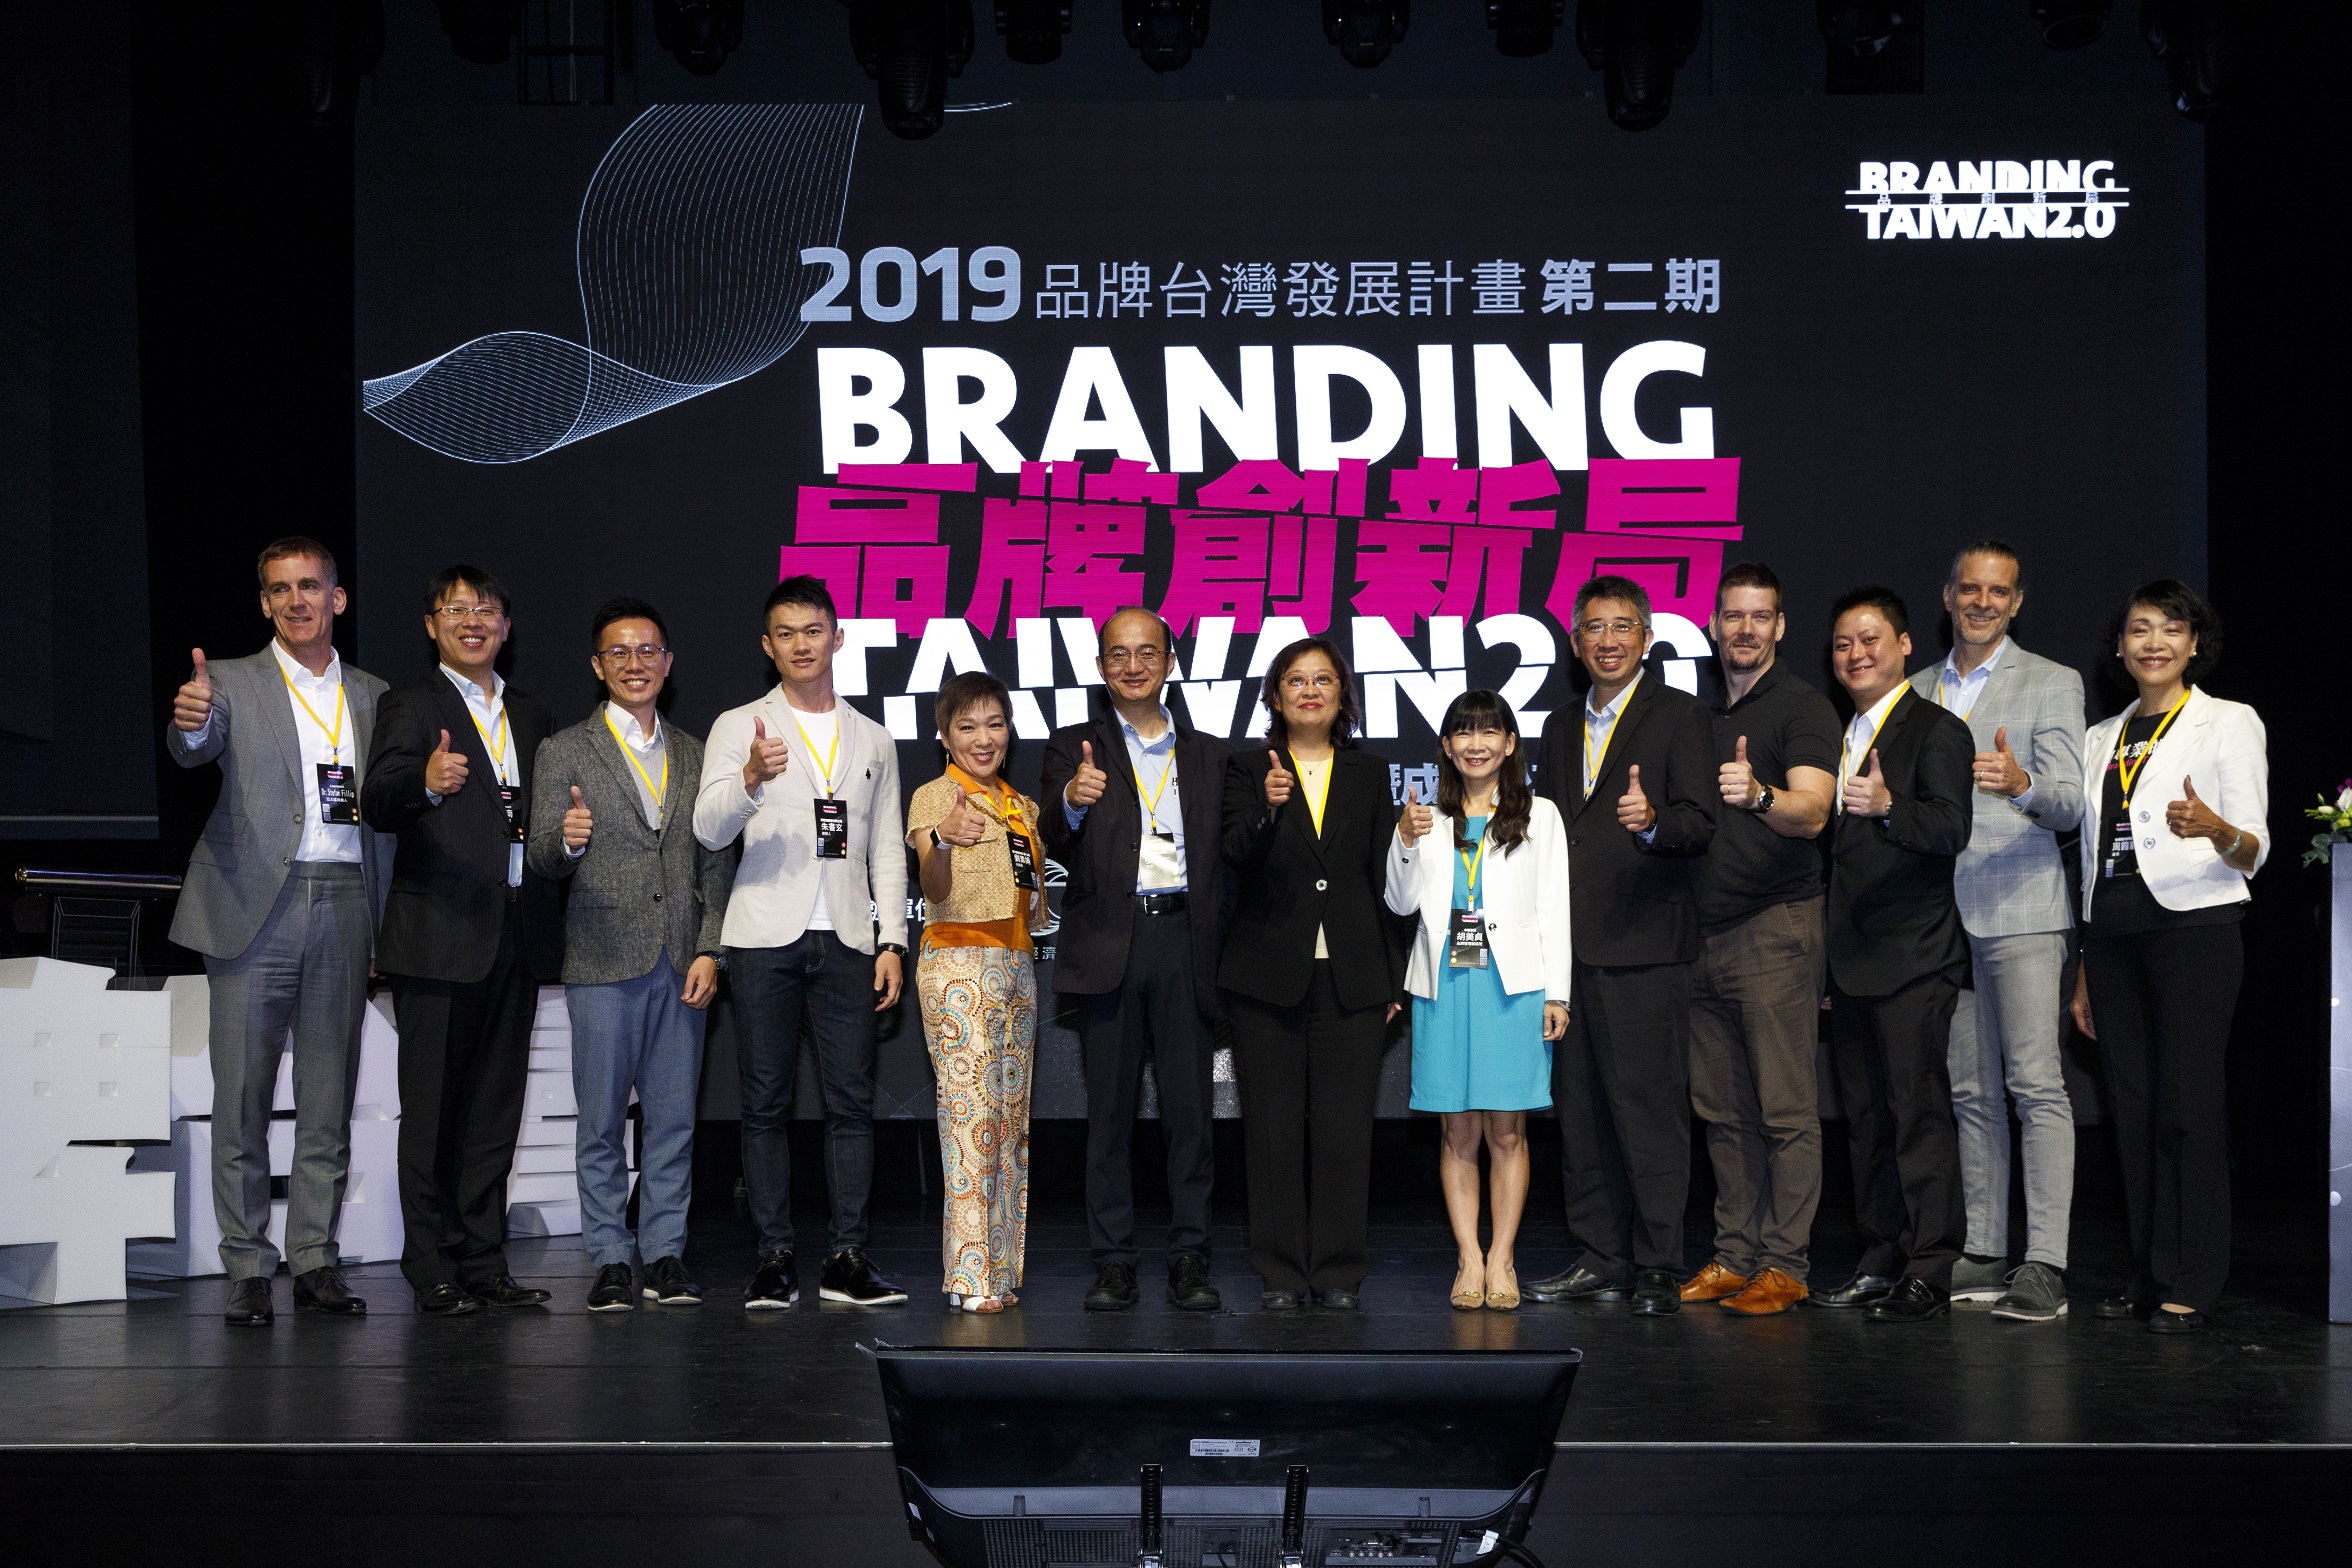 ●工業局主辦BRANDING TAIWAN2.0系列活動，「品牌創新局-企業交流暨成果分享會議題」由各產業代表分享新創品牌、利基品牌、領導品牌及成熟品牌各自的運營課題與實戰經驗。